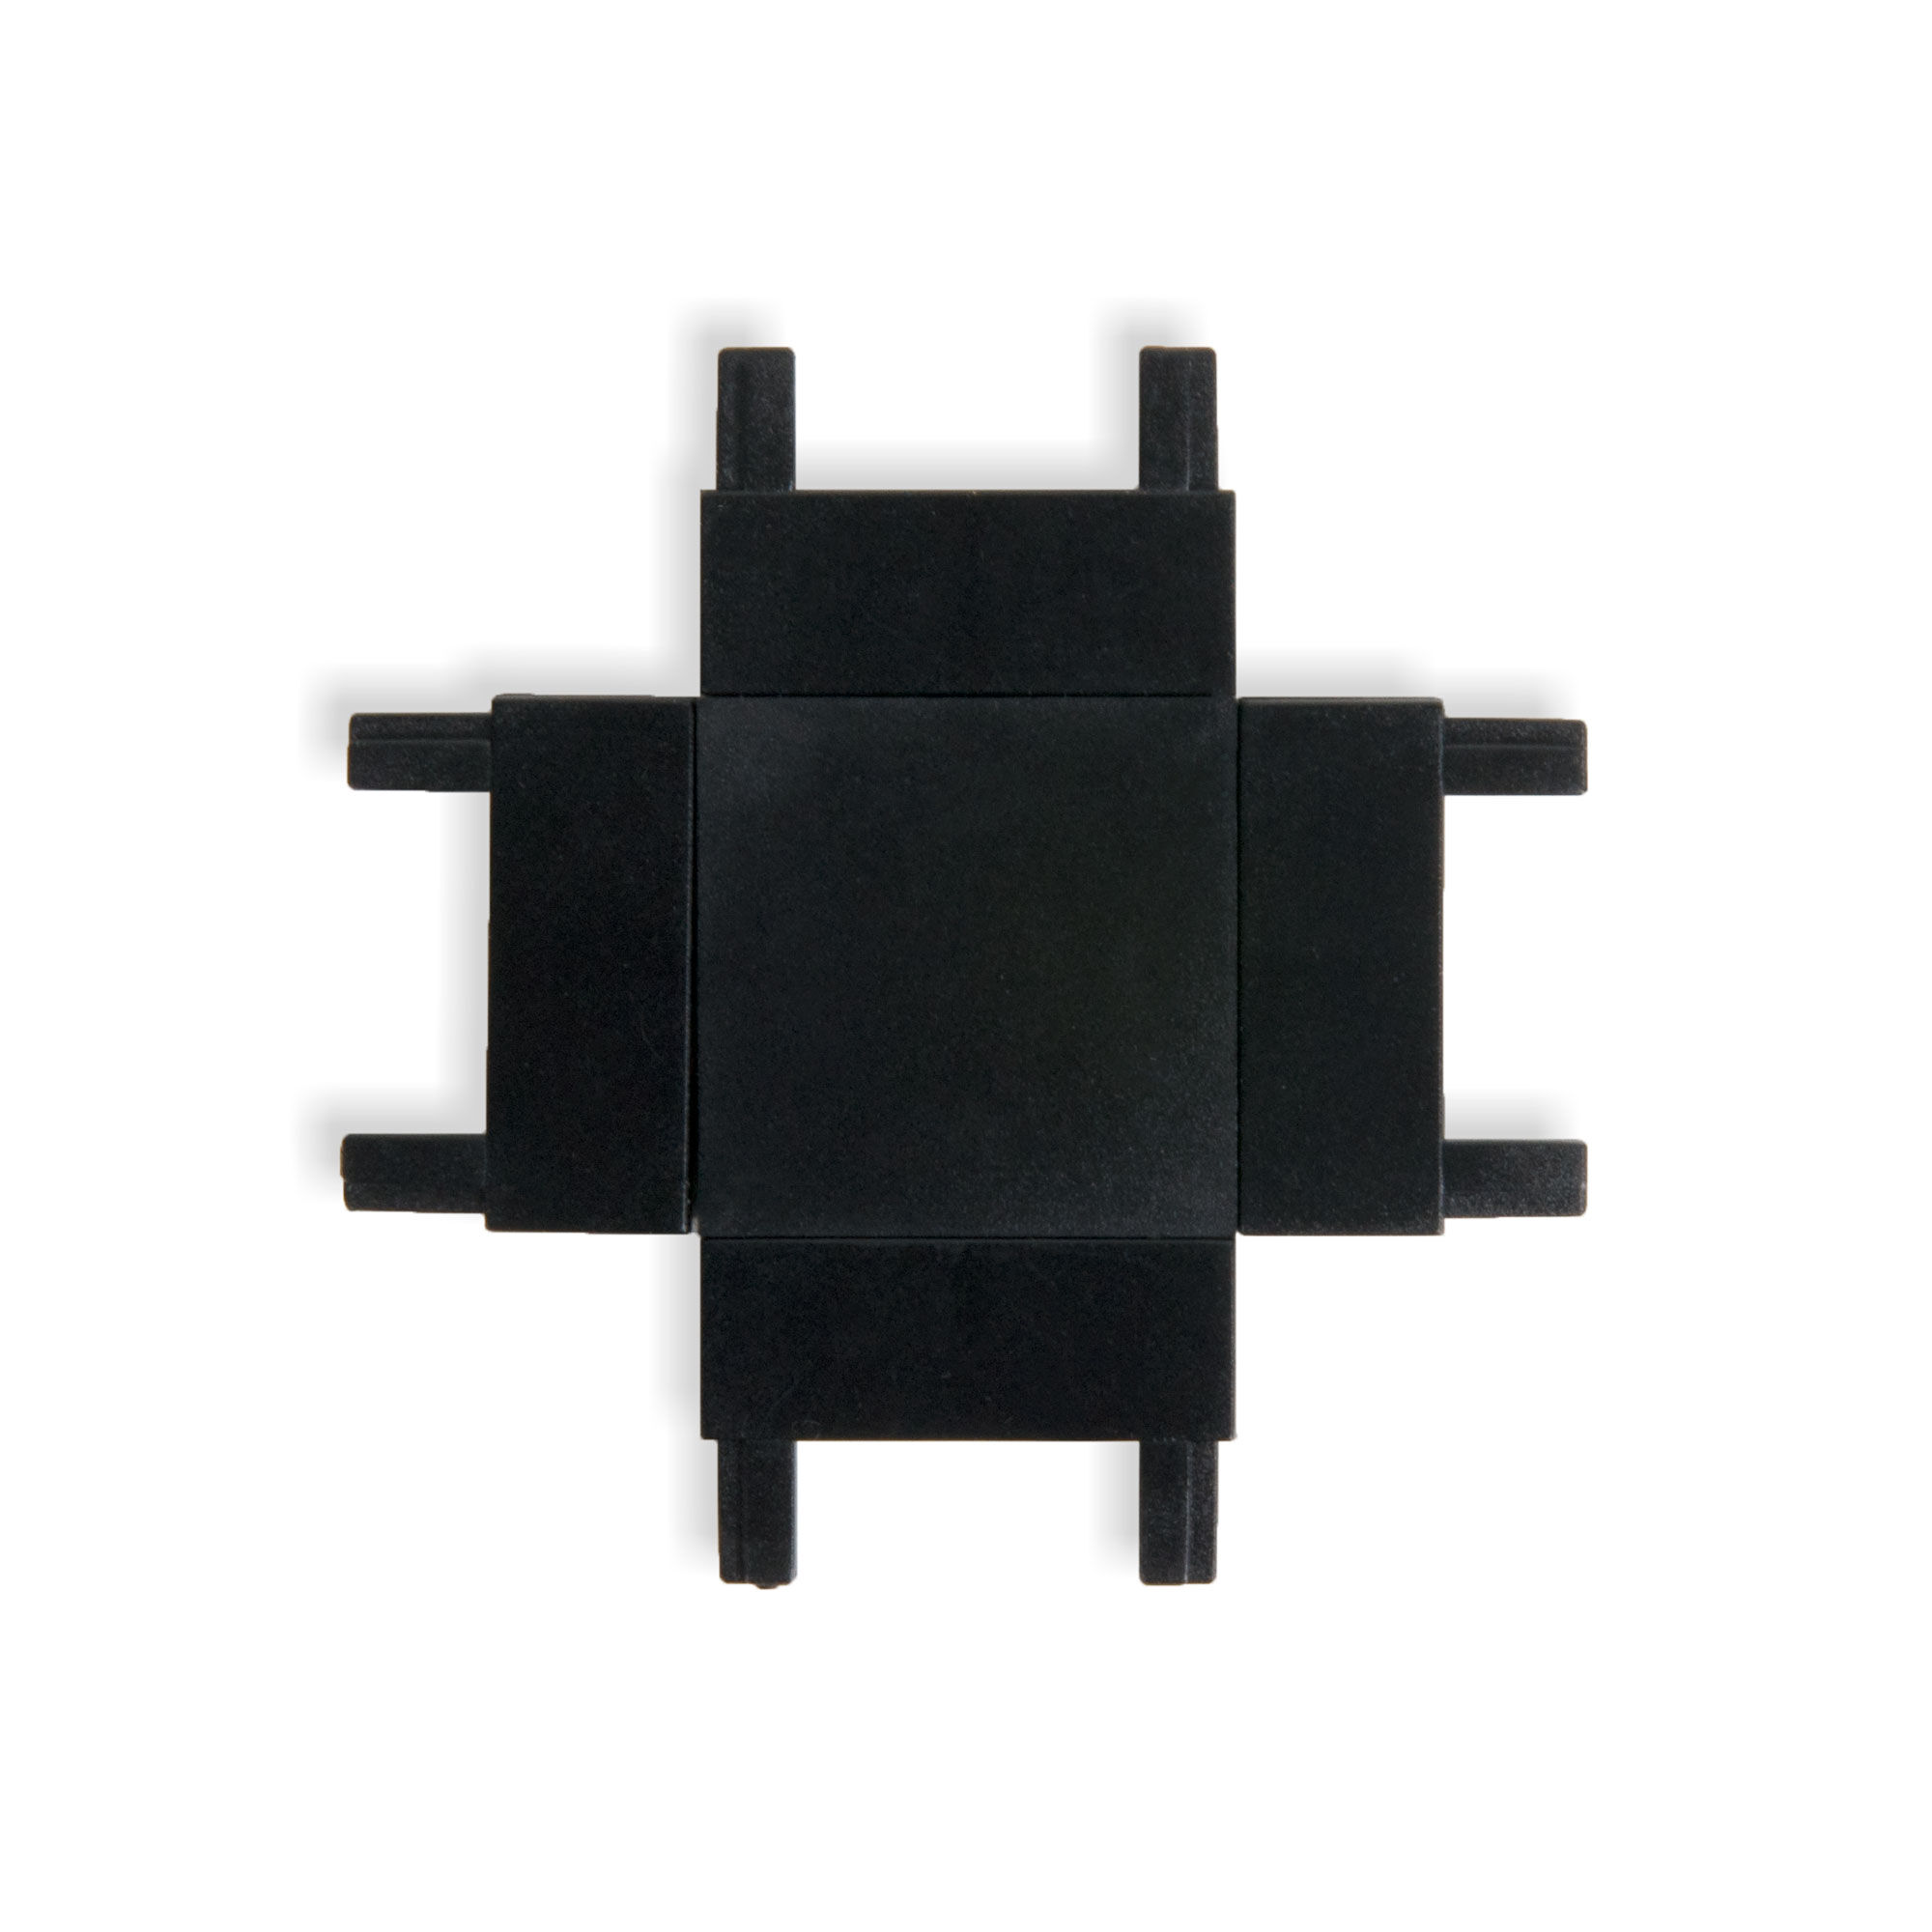 Flat Magnetic Четырёхсторонний соединитель для накладного шинопровода чёрный 85003/00